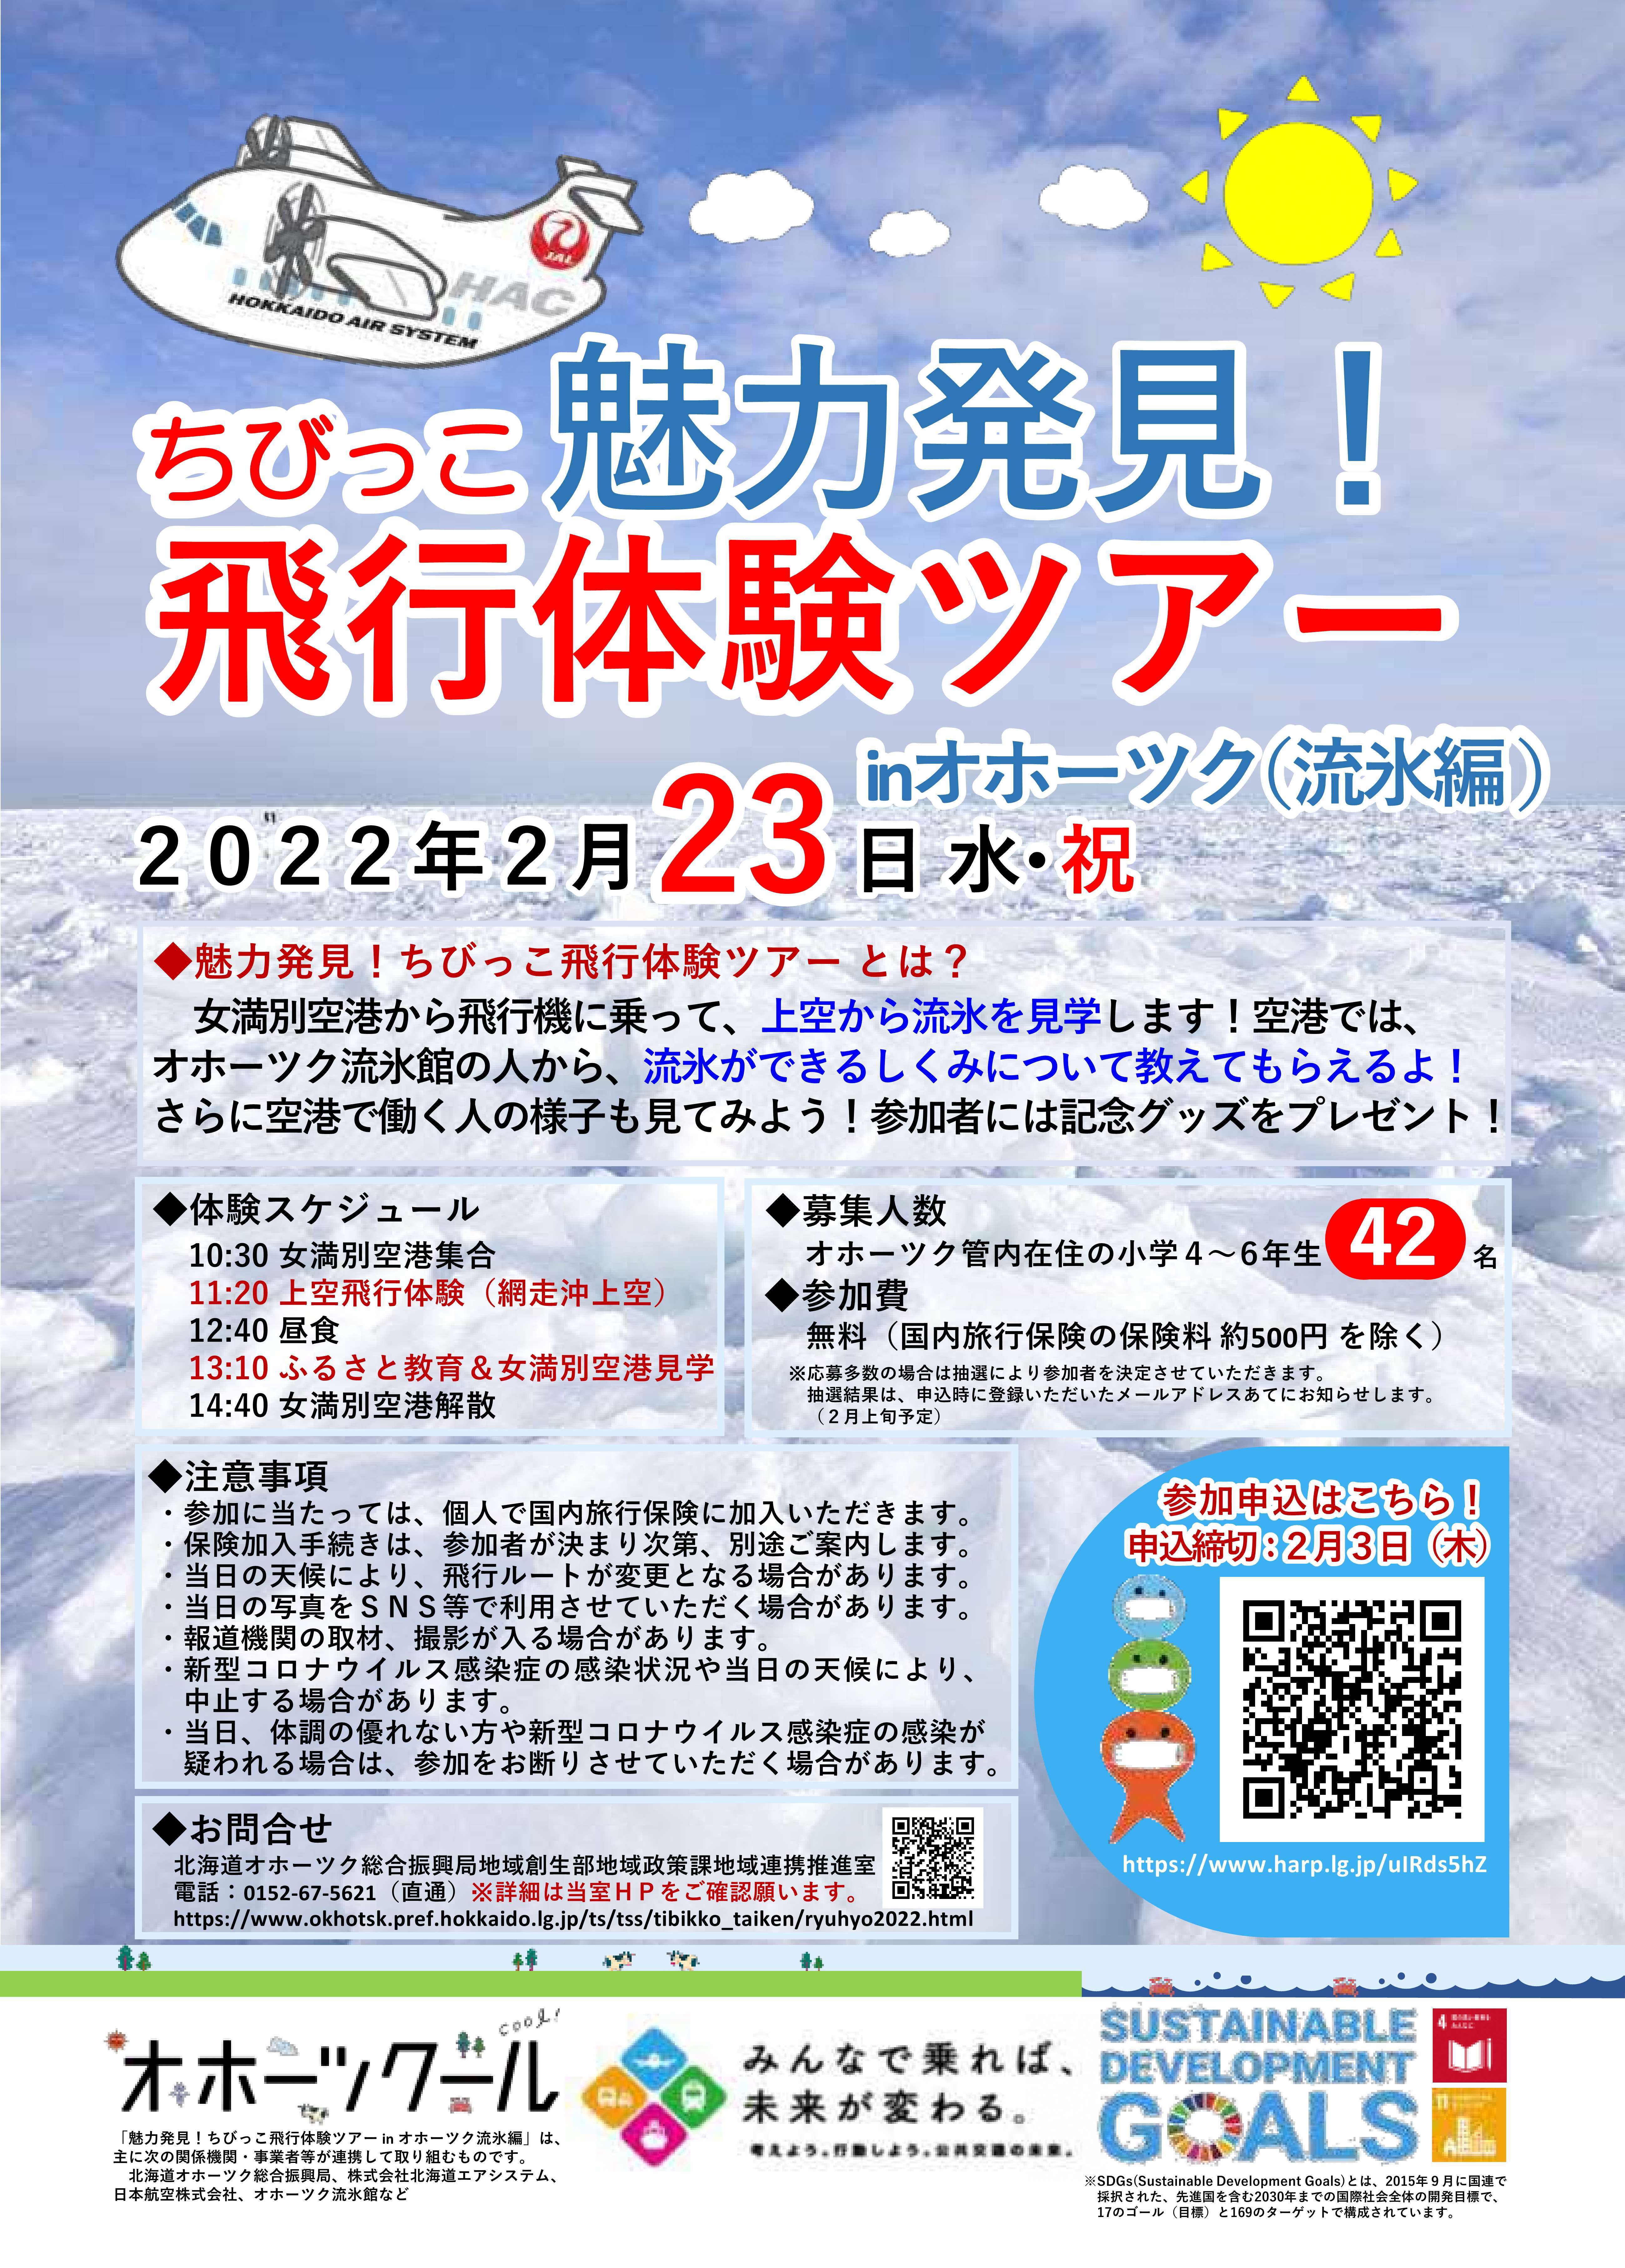 20220106_飛行体験流氷編_チラシ案 (JPG 2.34MB)